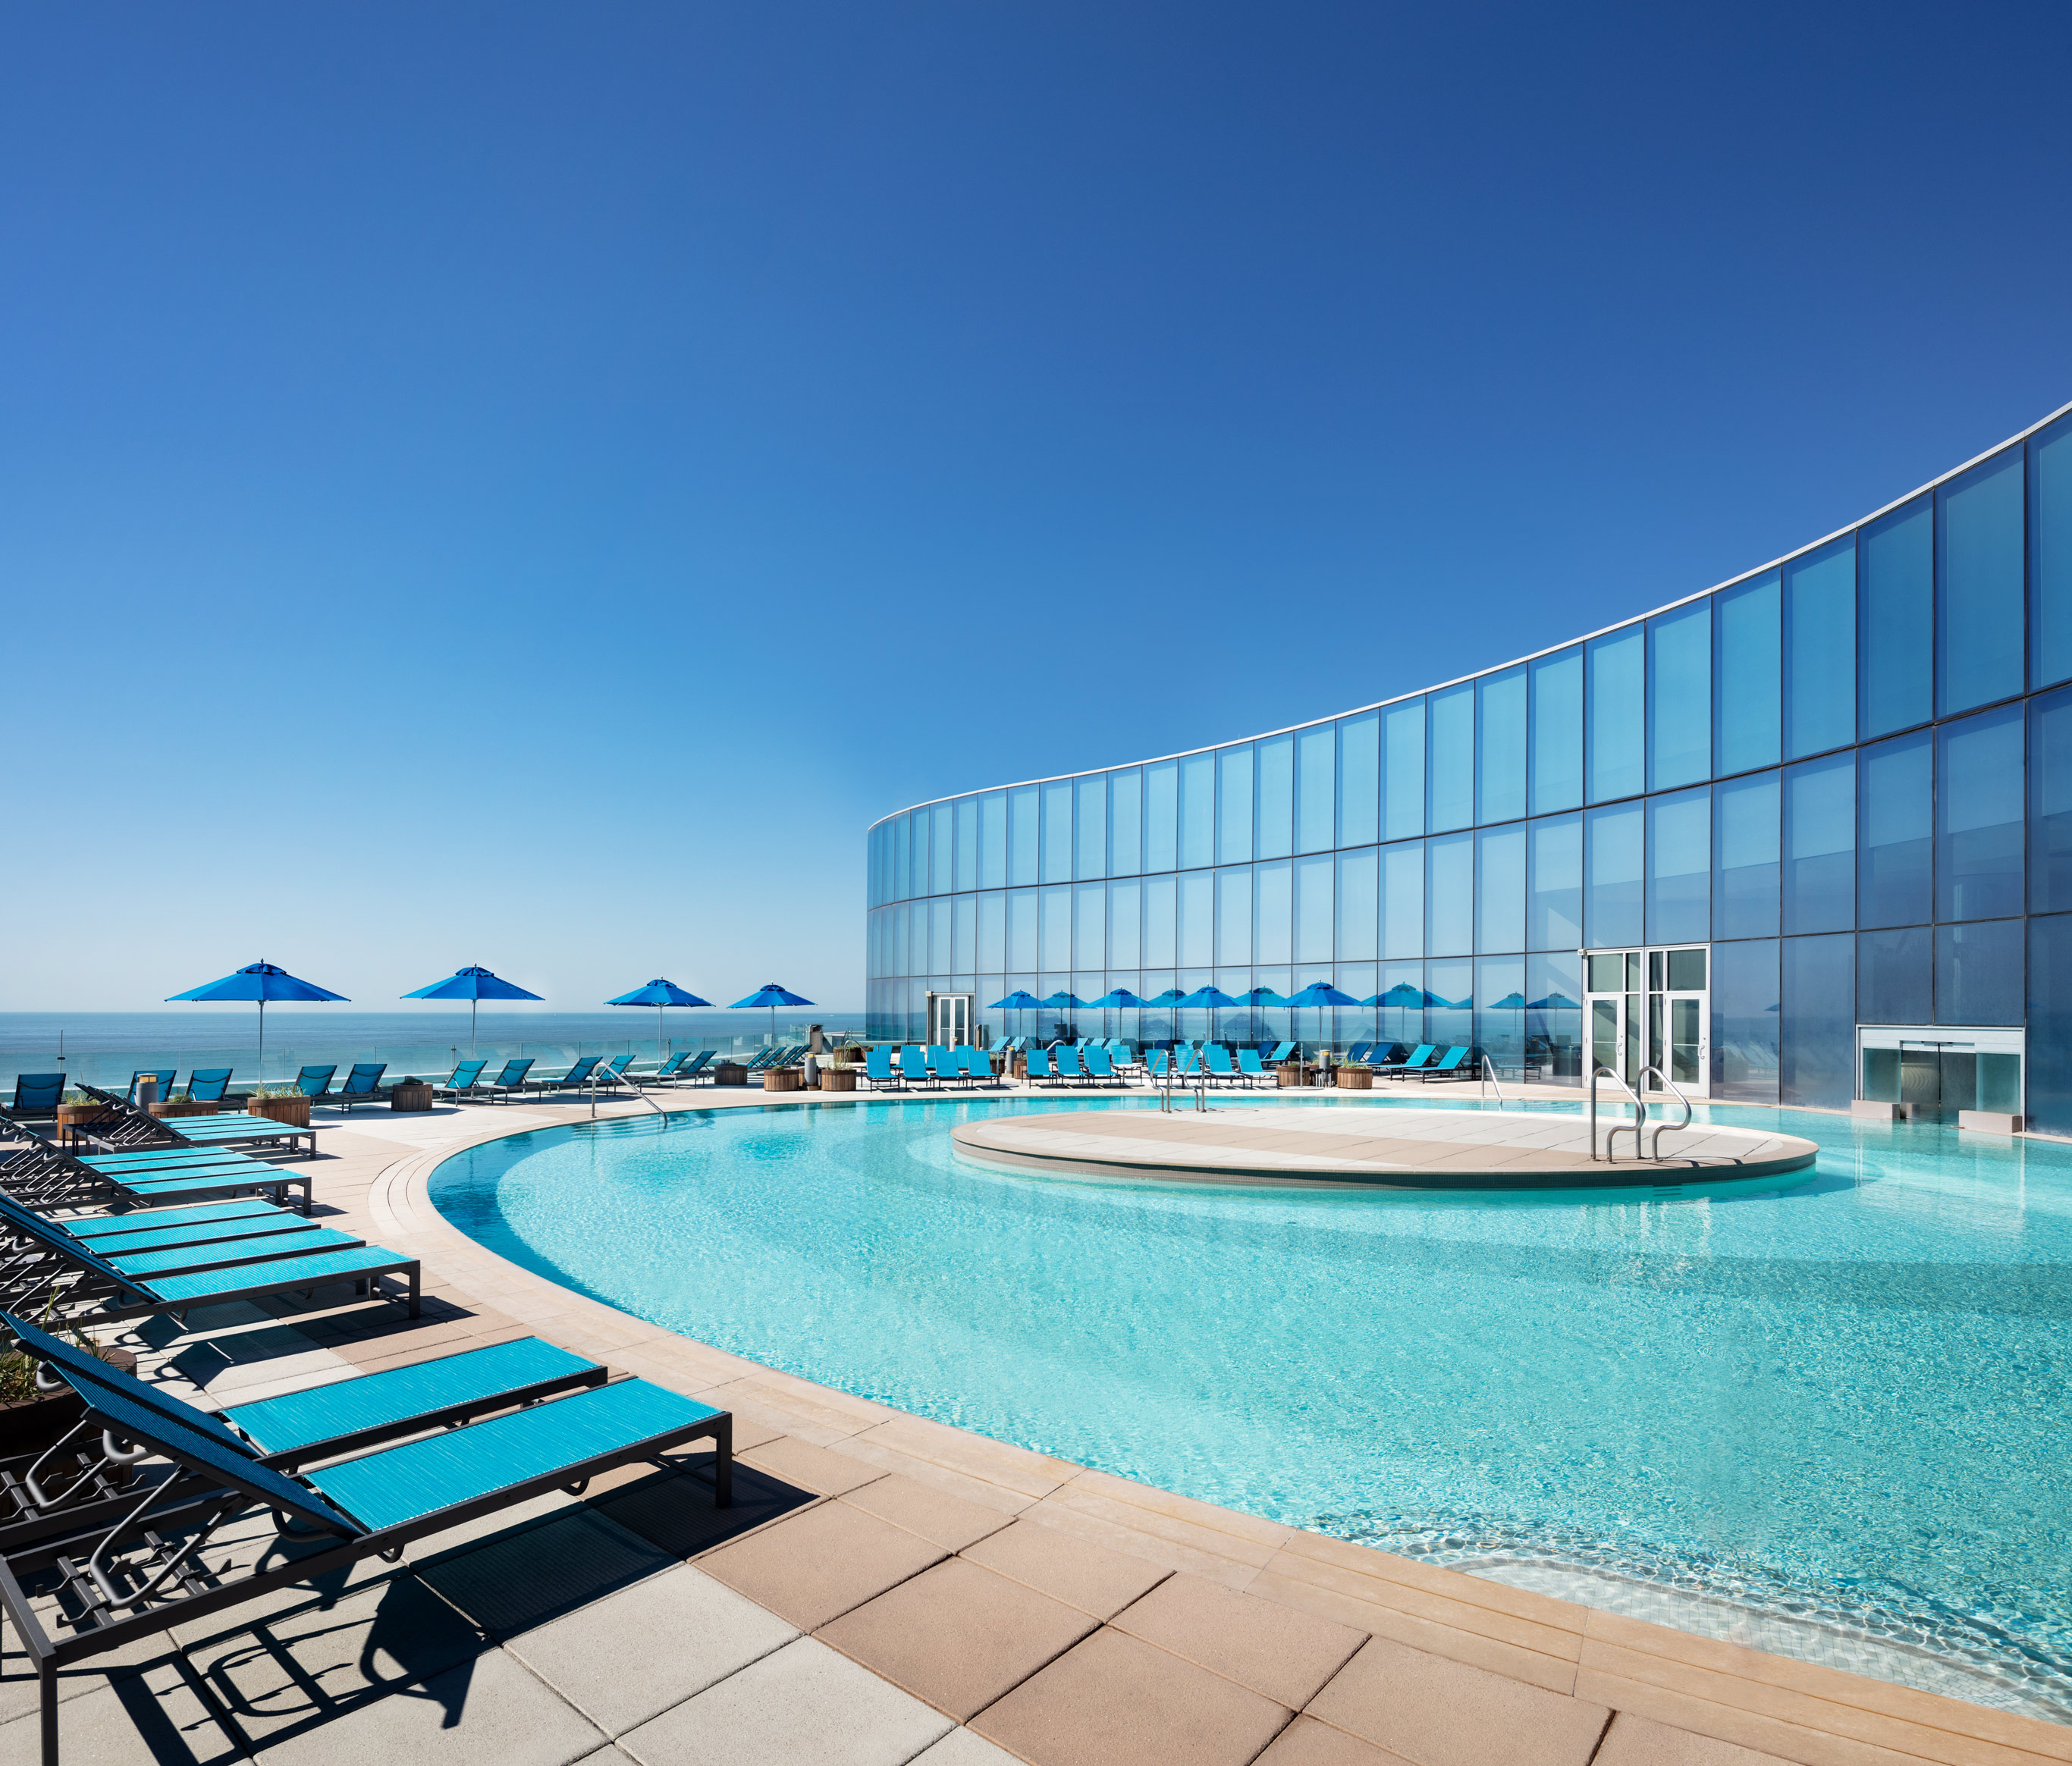 Pool view at Ocean Casino Resort Atlantic City